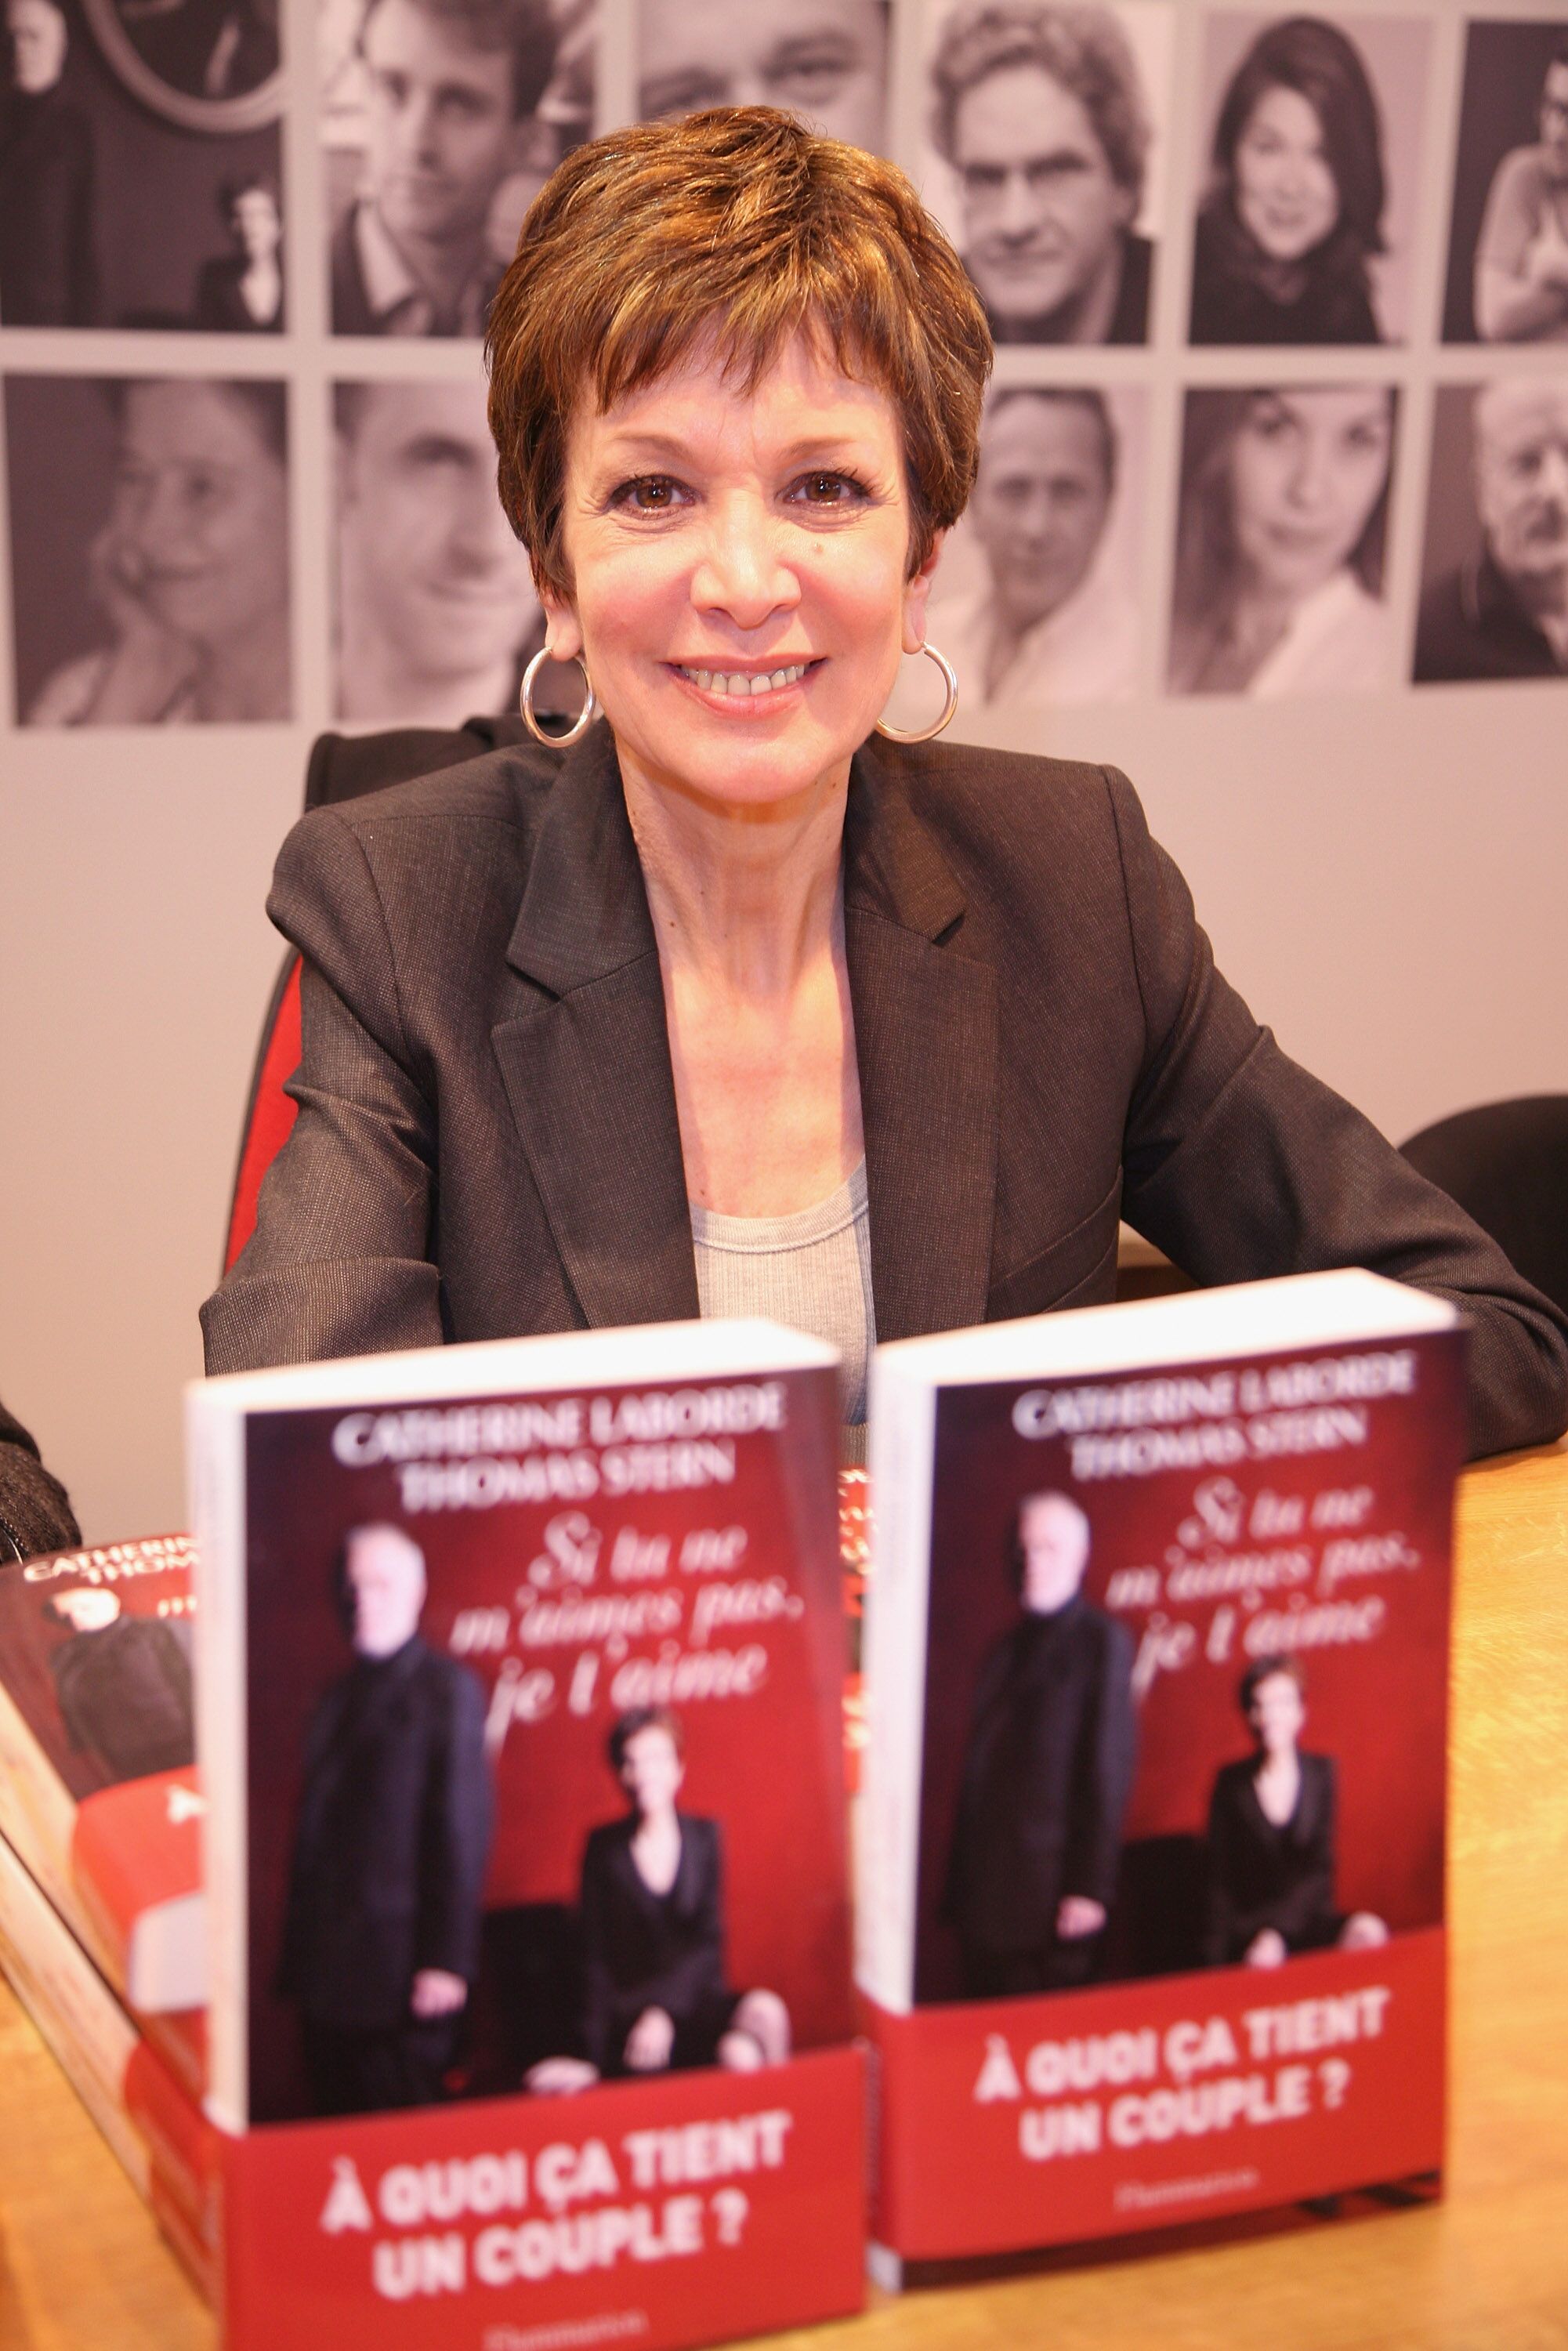 Catherine Laborde signe des exemplaires de son livre au 30e salon du livre de la Porte de Versailles le 27 mars 2010 à Paris, France. | Photo : Getty Images